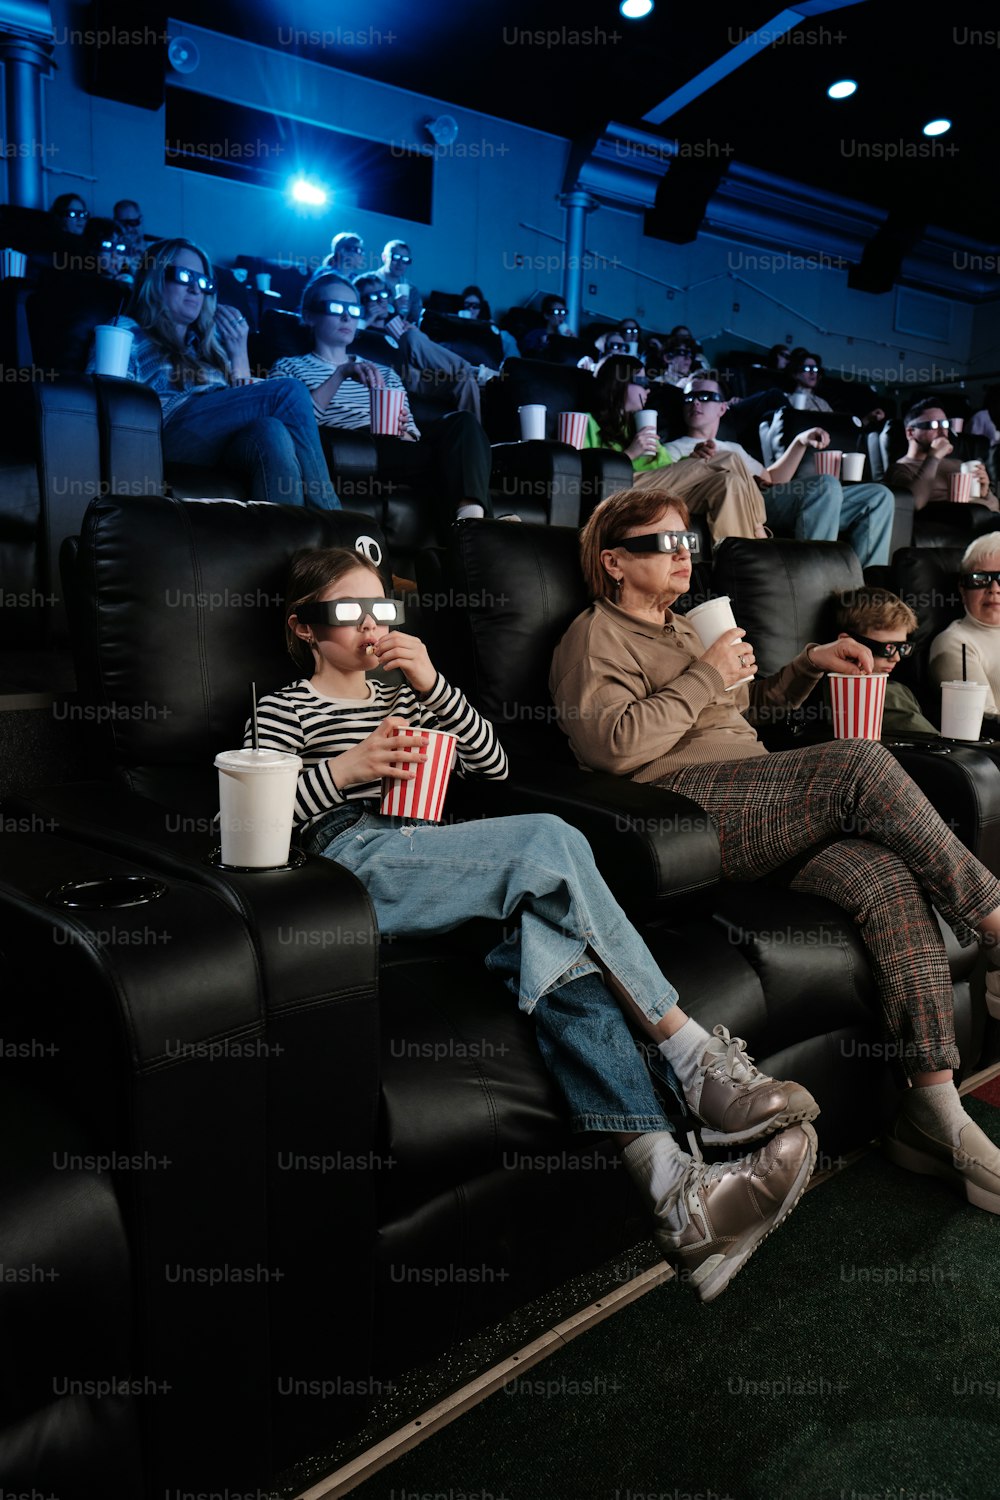 映画館に座っている人々のグループ